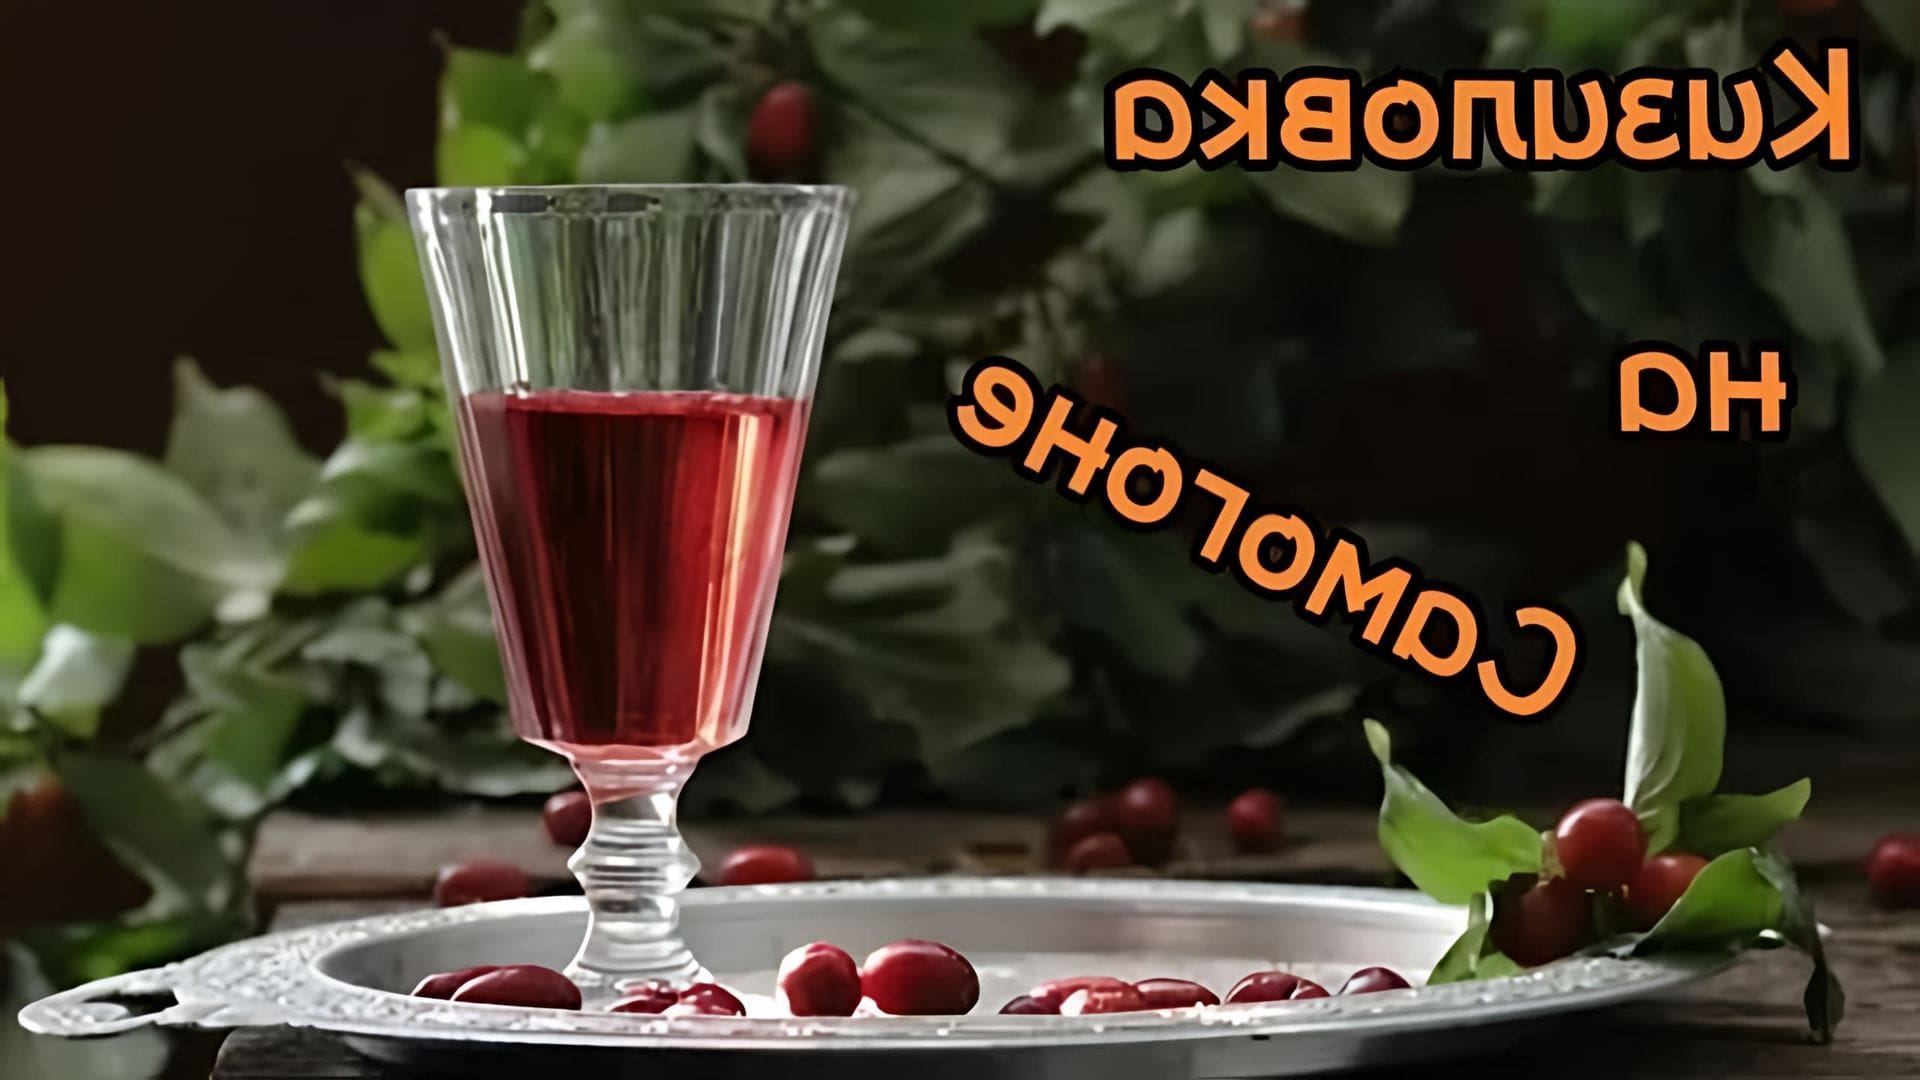 Кизиловка - это традиционный русский напиток, который готовится на основе кизила и самогона